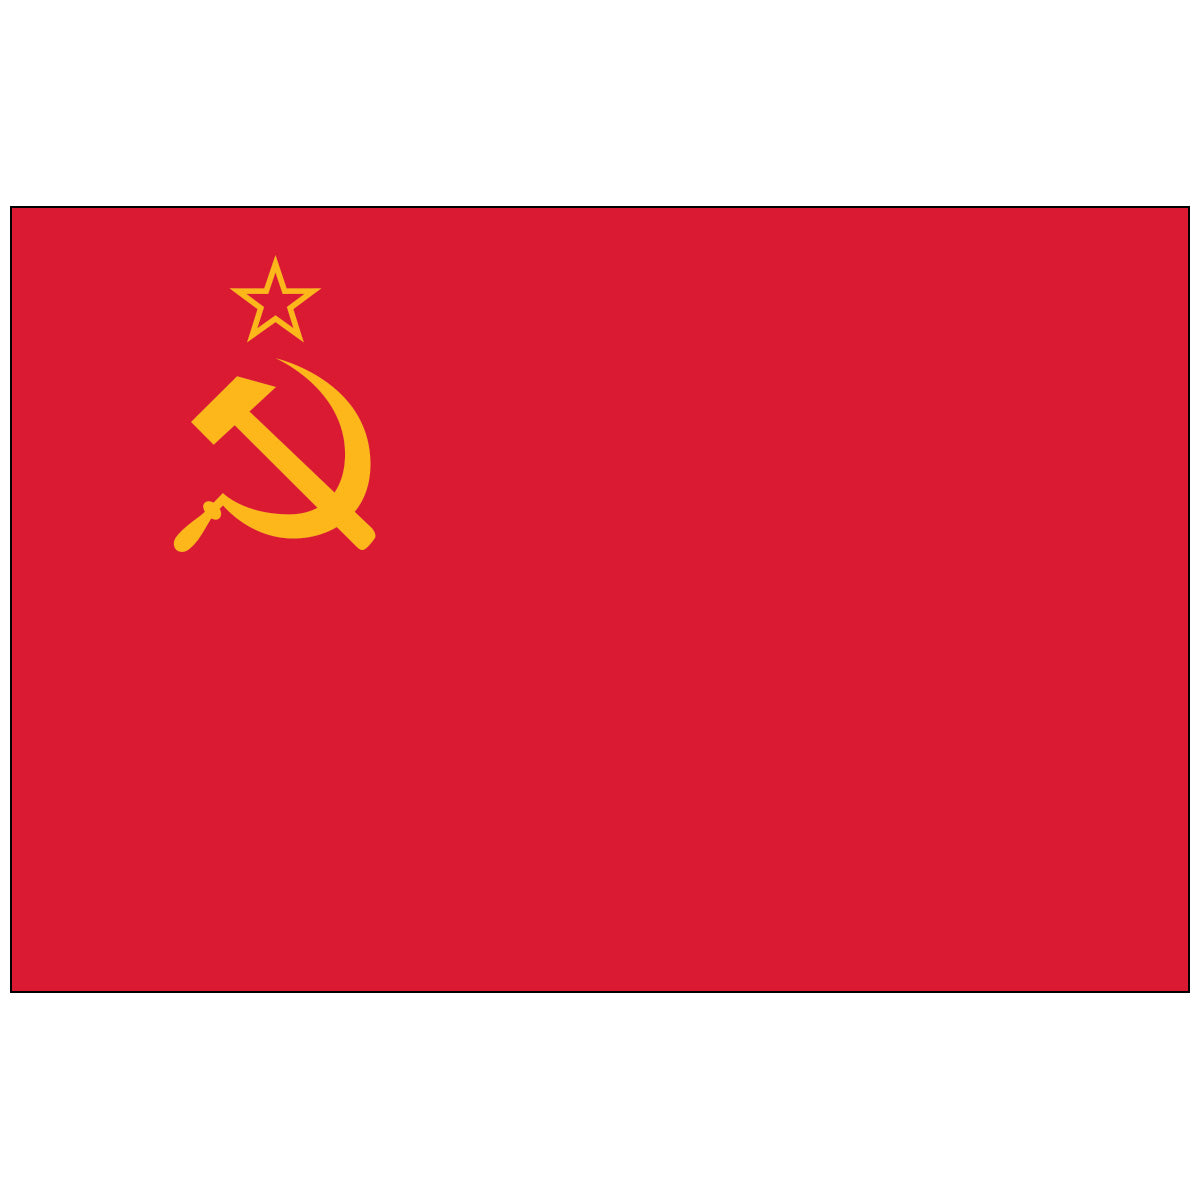 USSR - Nylon World Flag